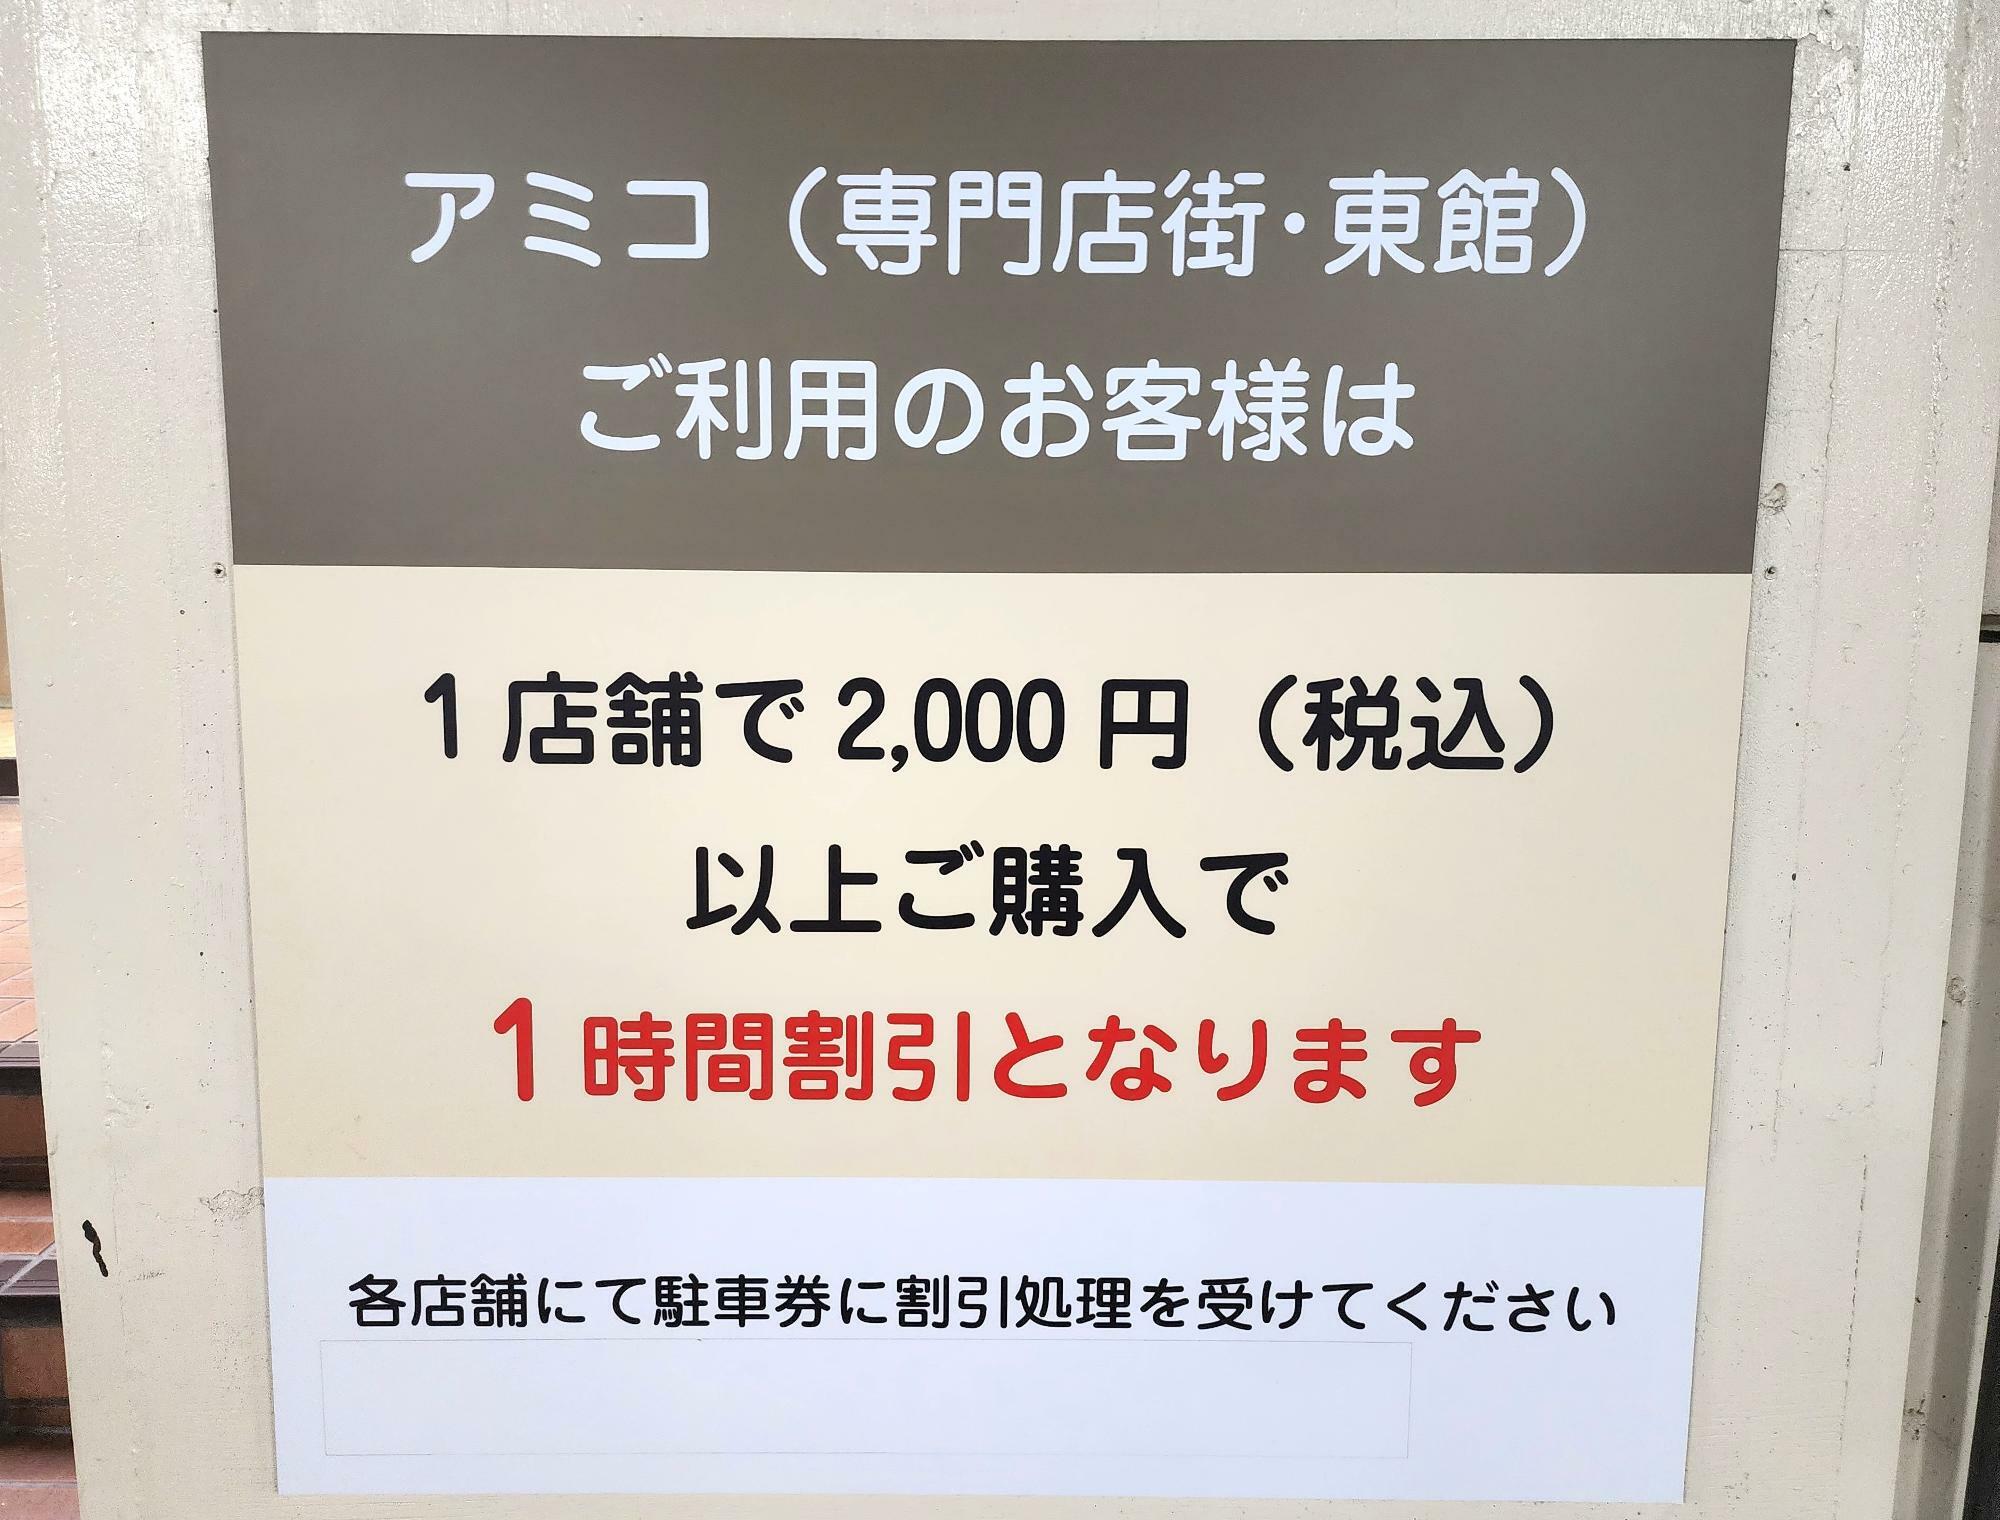 「日本の味めぐり」も駐車料金割引の対象です！